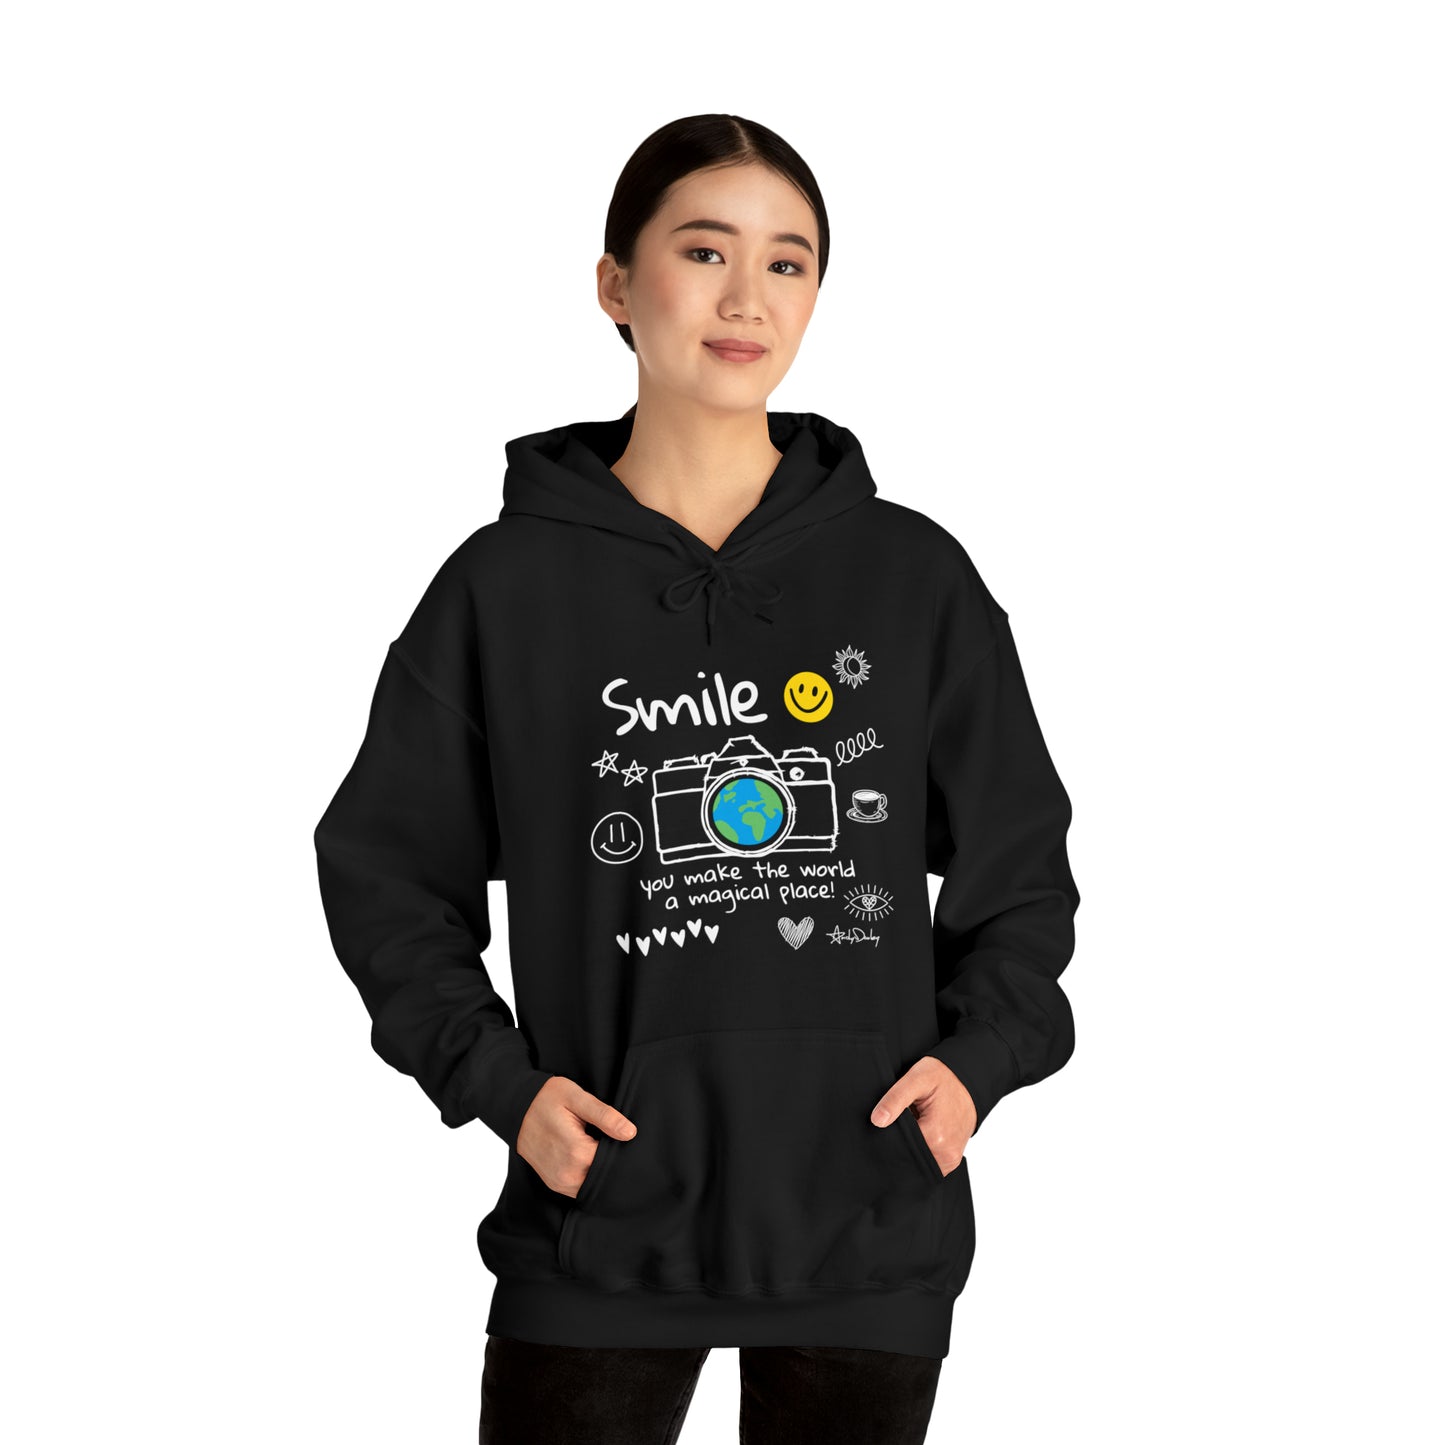 Smile - Hooded Sweatshirt